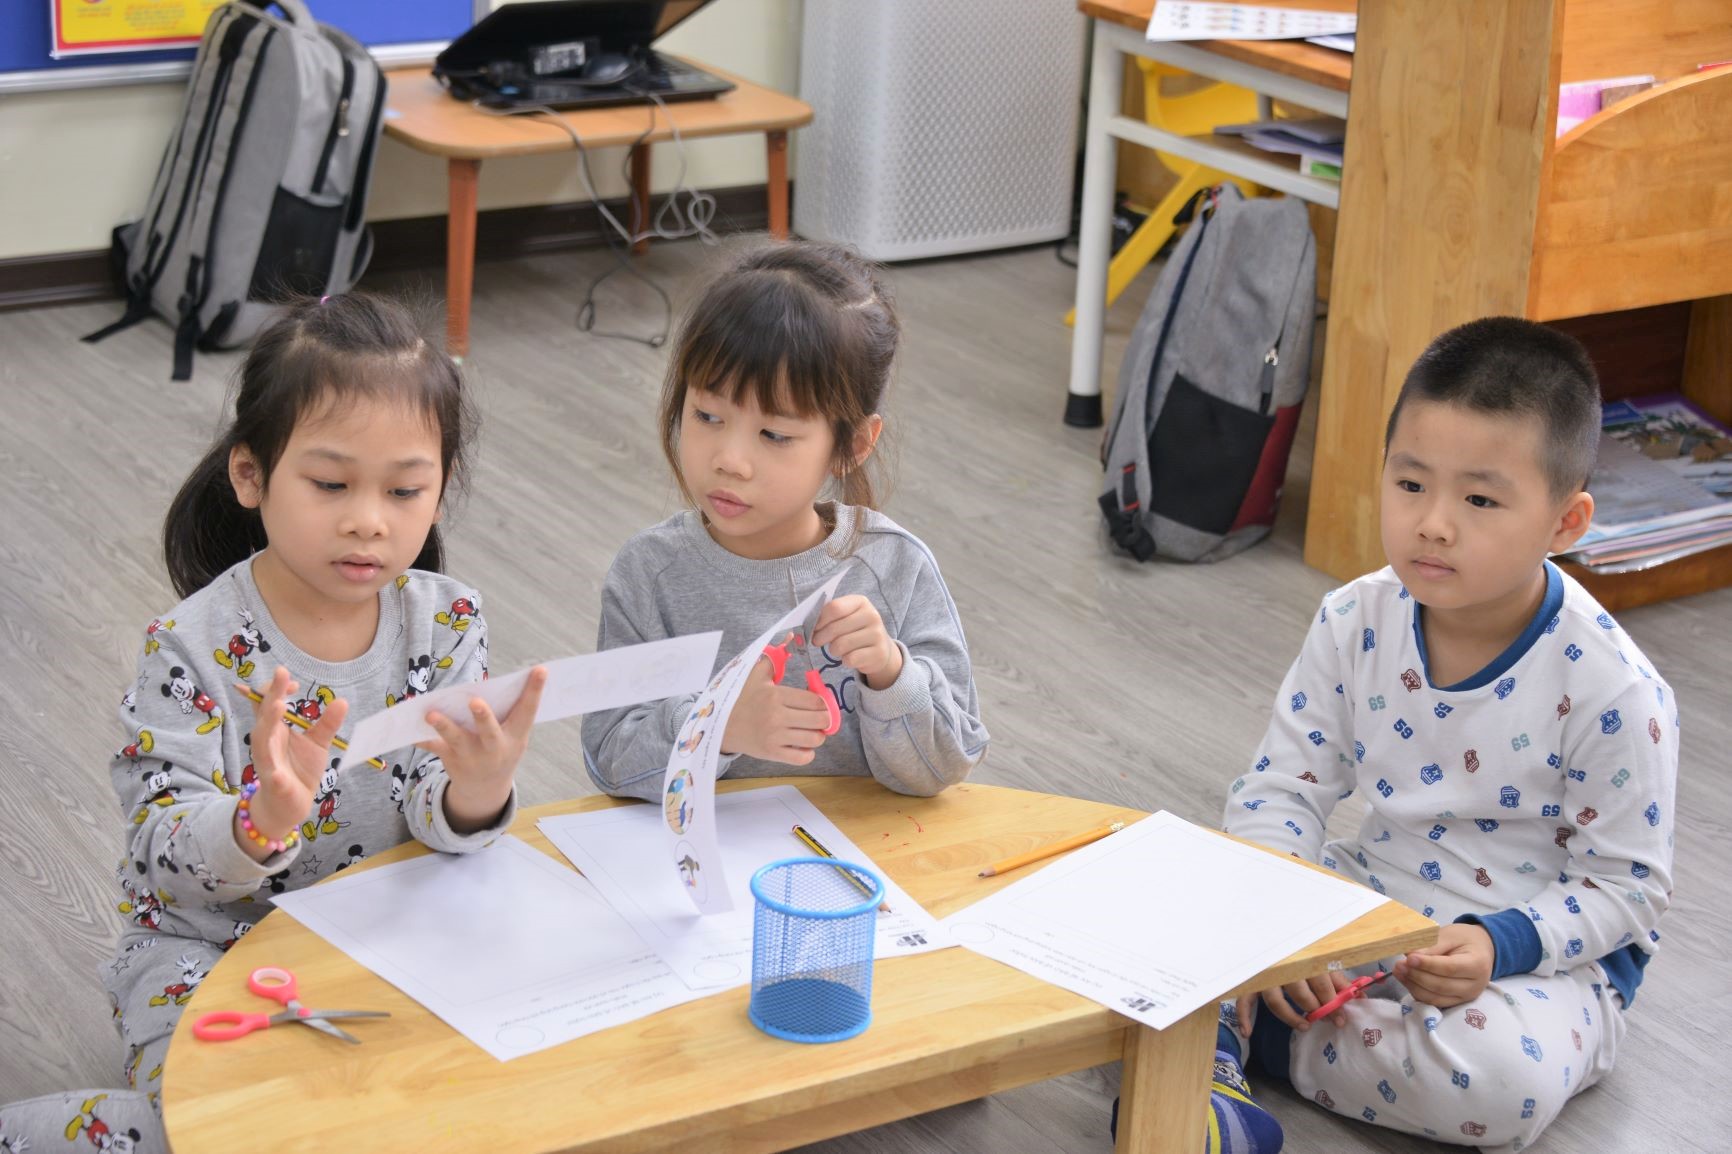 Cùng học quy tắc: “Năm ngón tay xinh” với các bạn nhỏ trường MN Hanoi Academy.